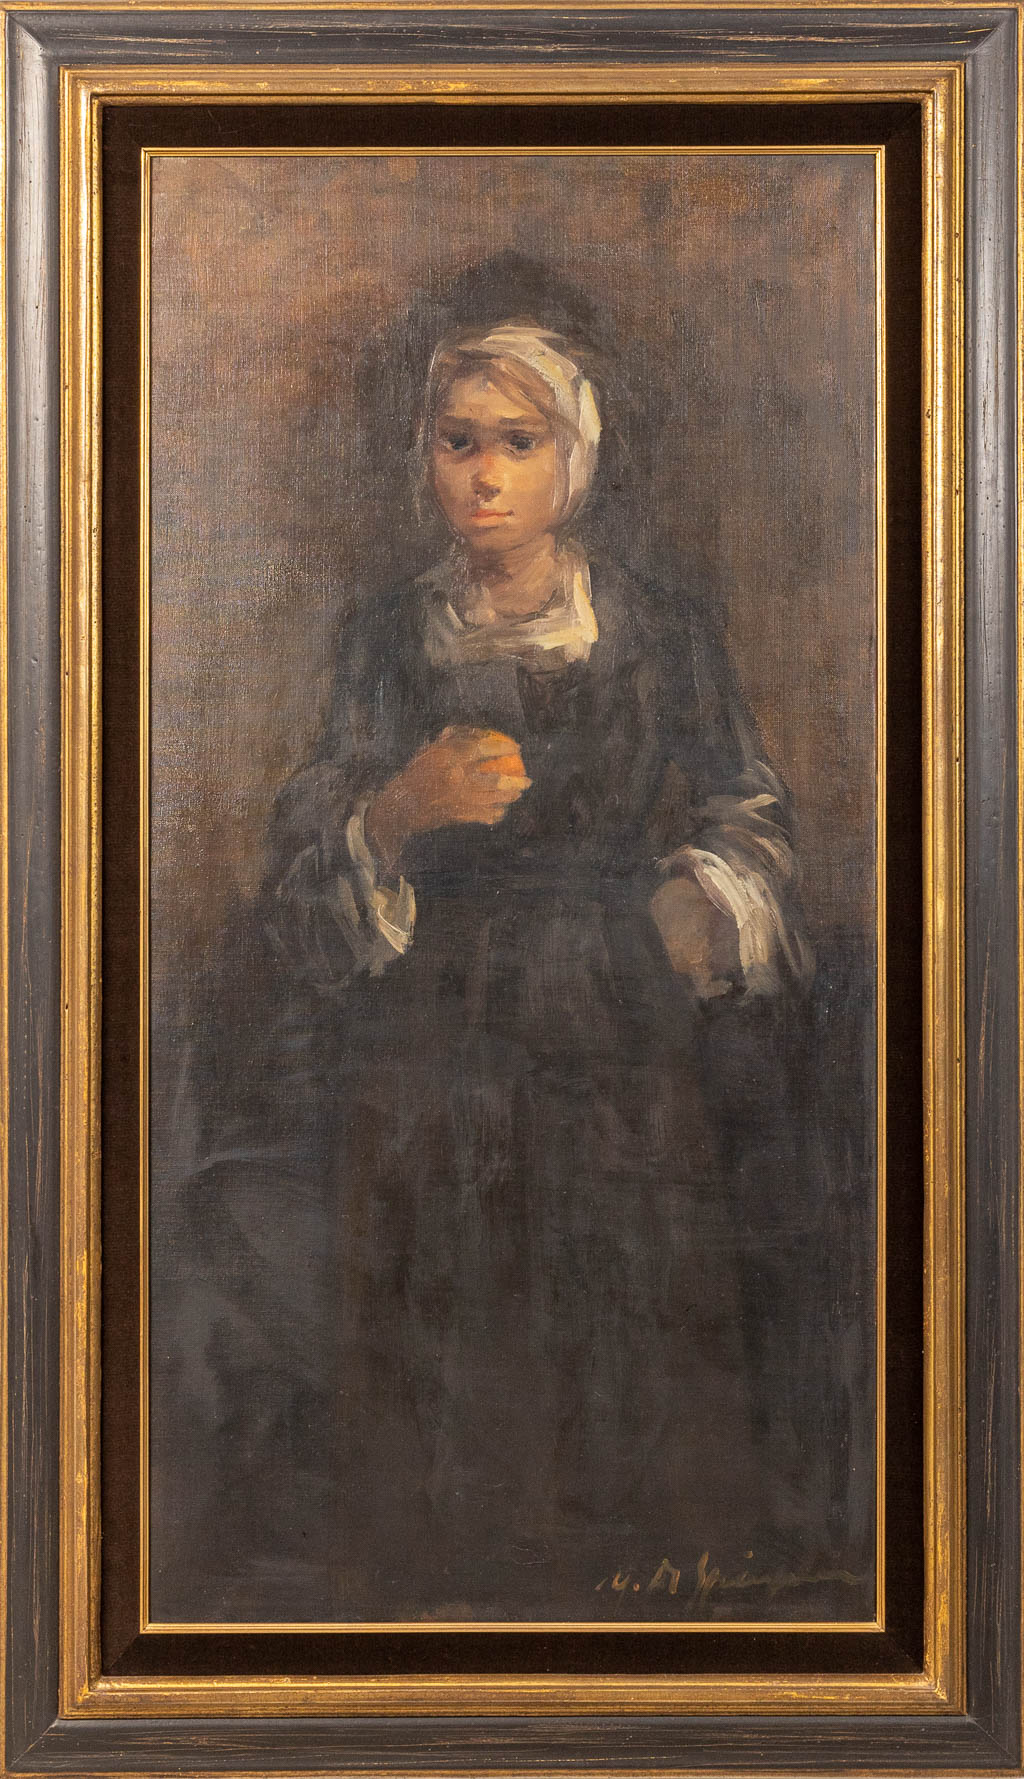 Marthe DE SPIEGELEIR (1897-1991) 'Meisje met de sinaasappel' a painting oil on canvas. (60 x 120 cm)